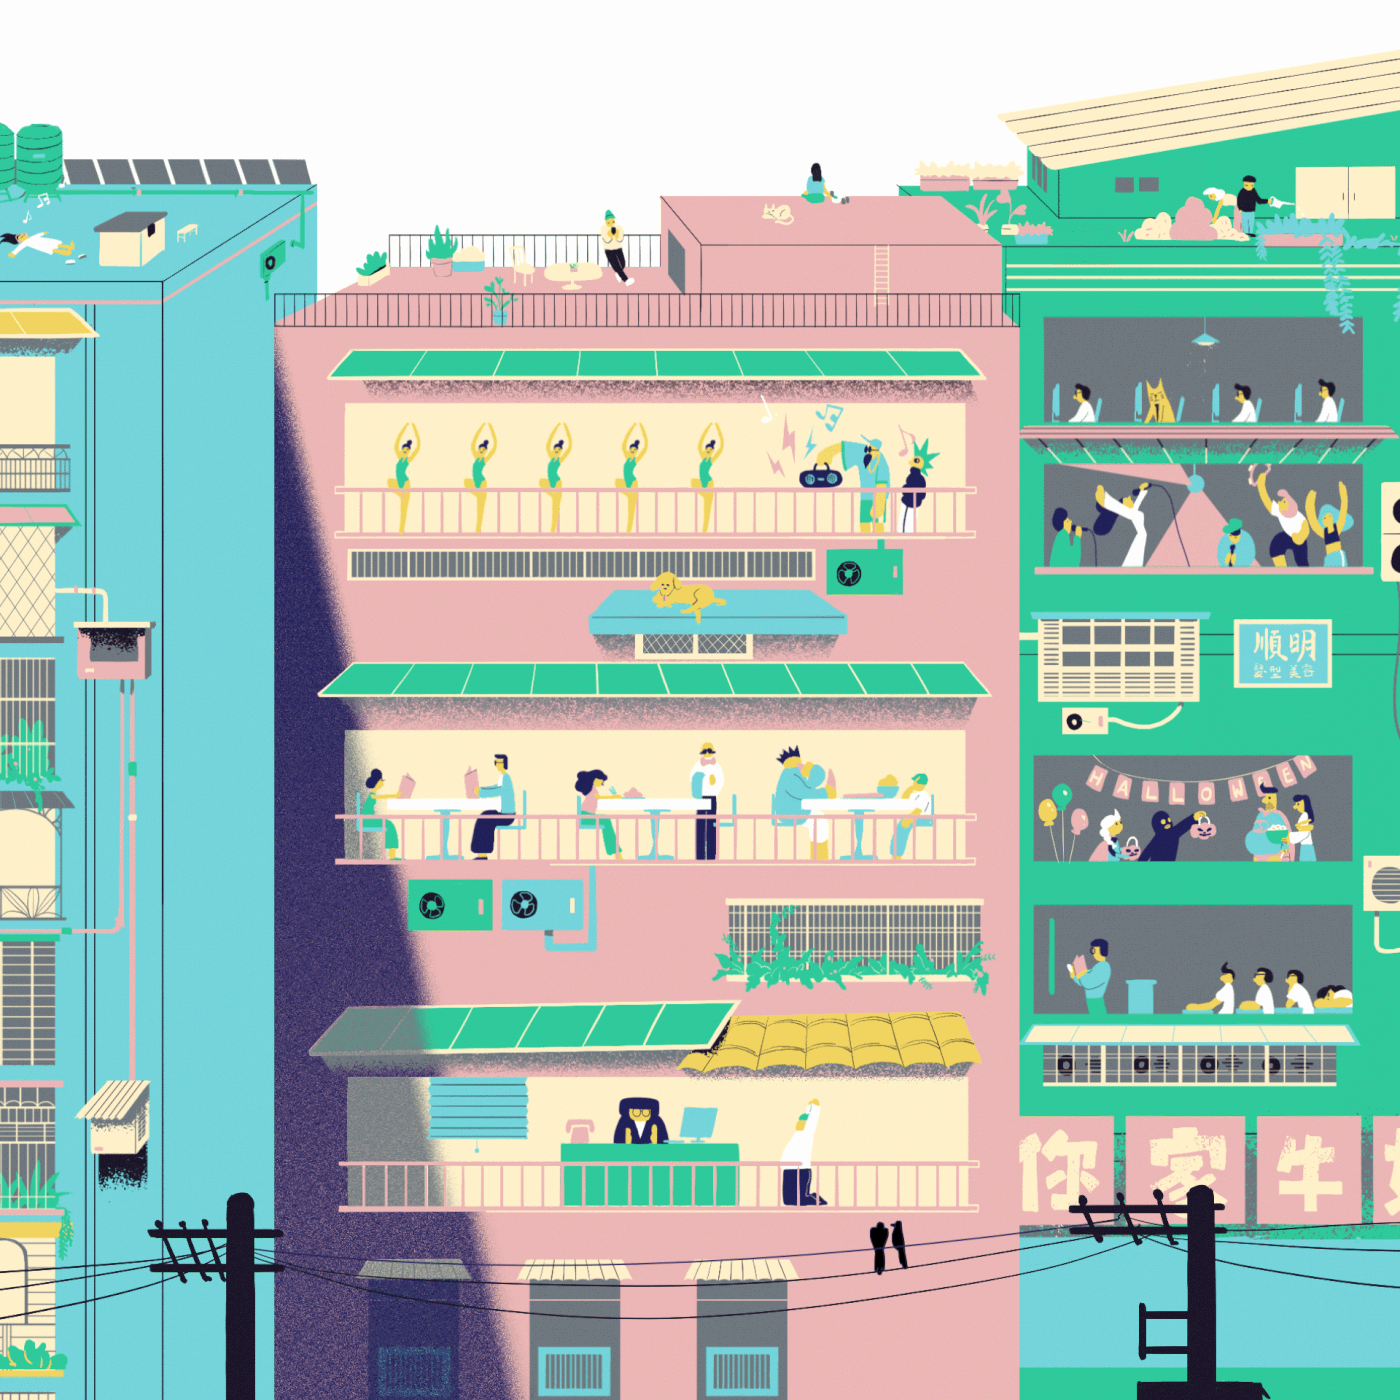 Cel Animation taipei metro color city